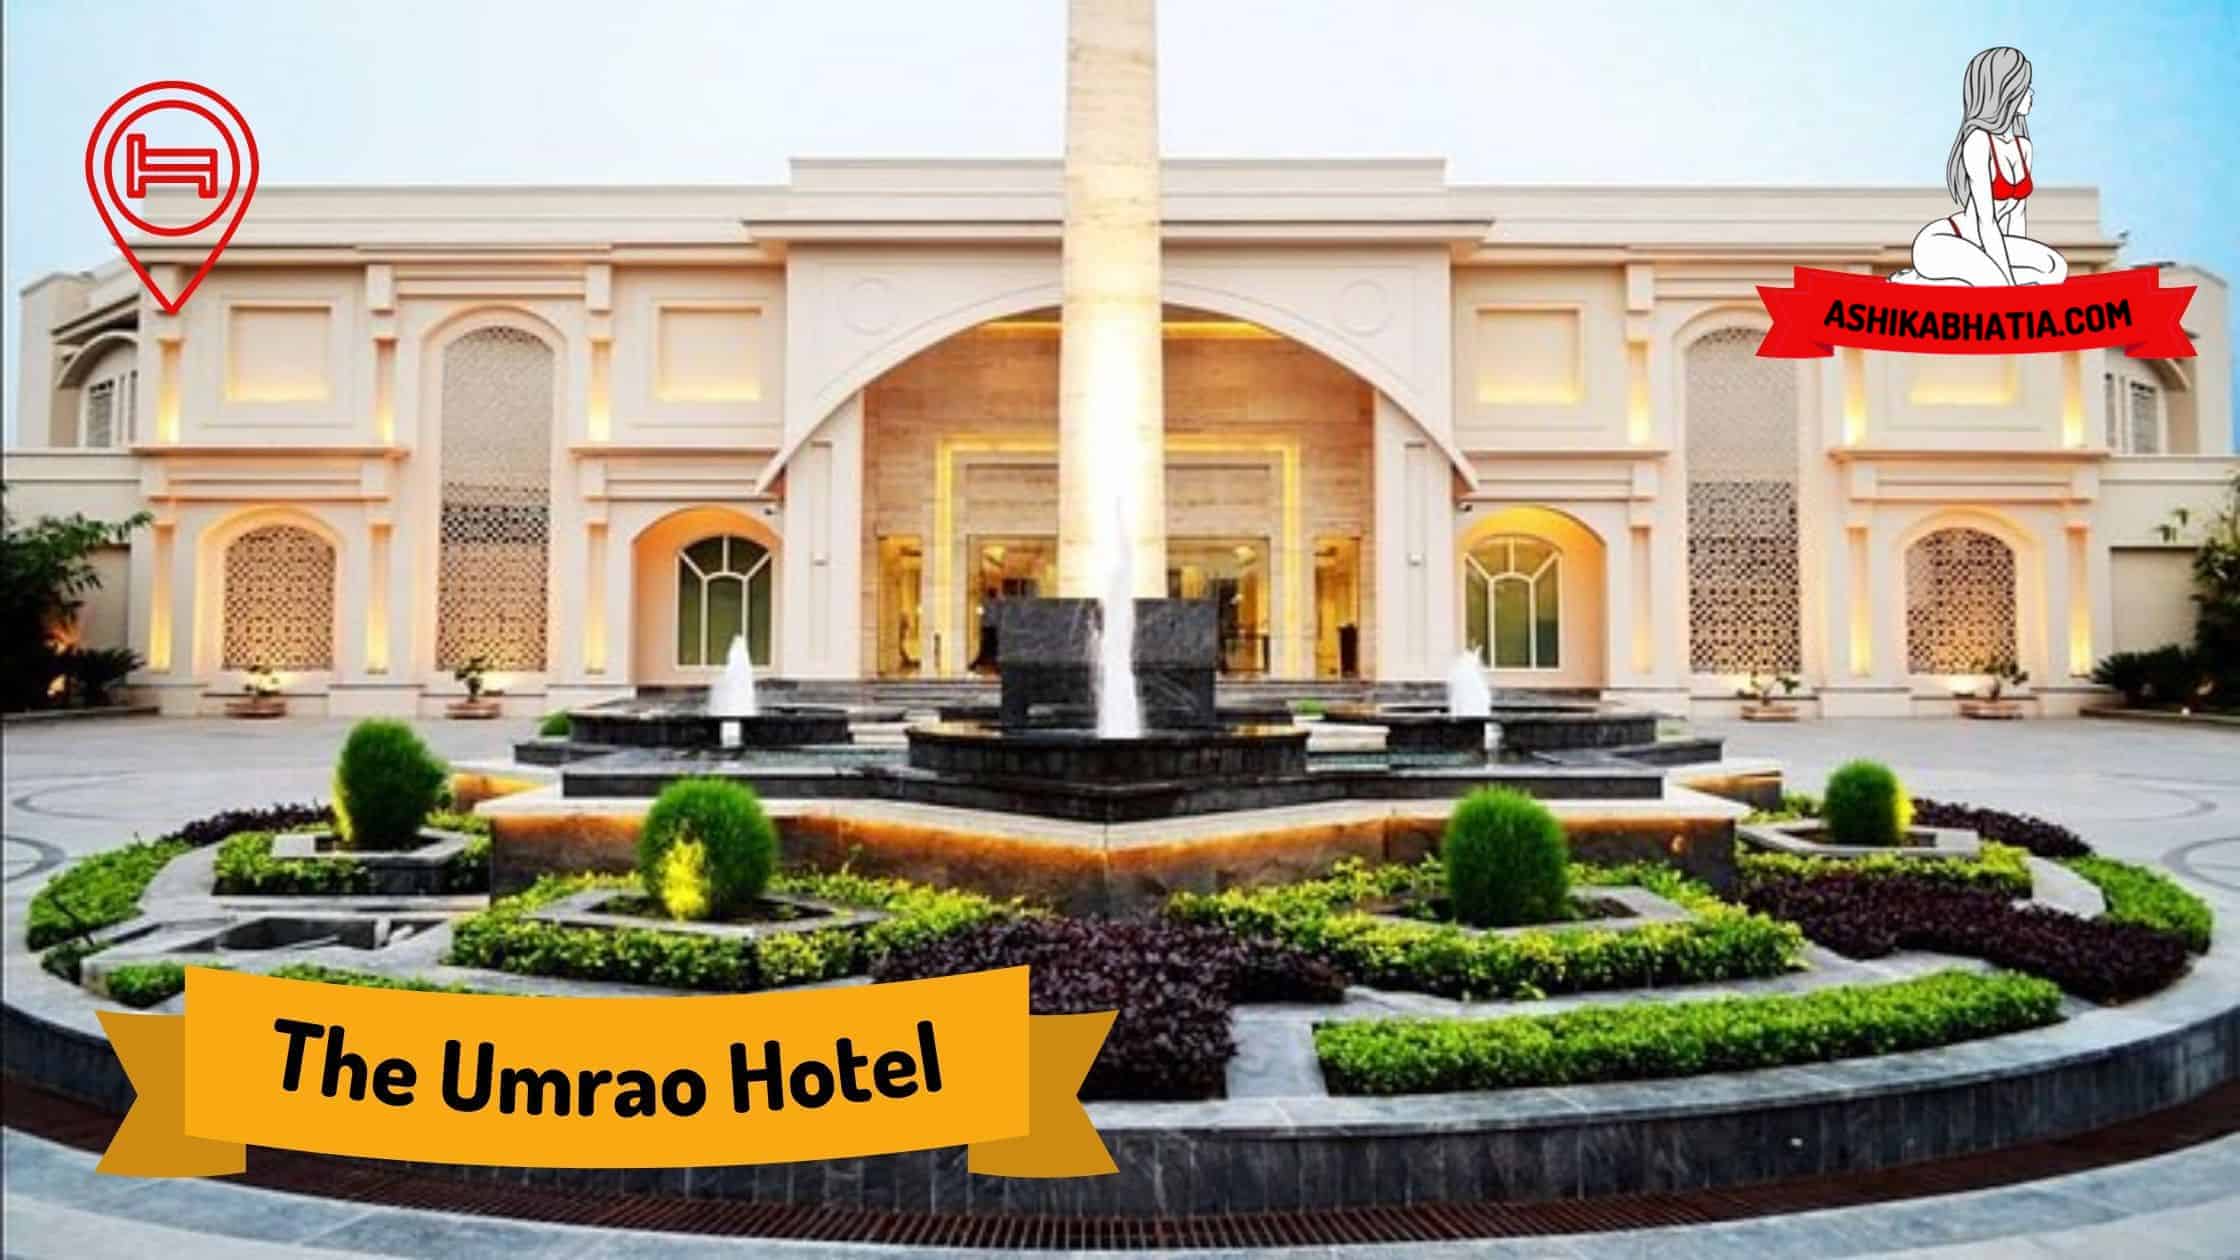 The Umrao Hotel Escorts